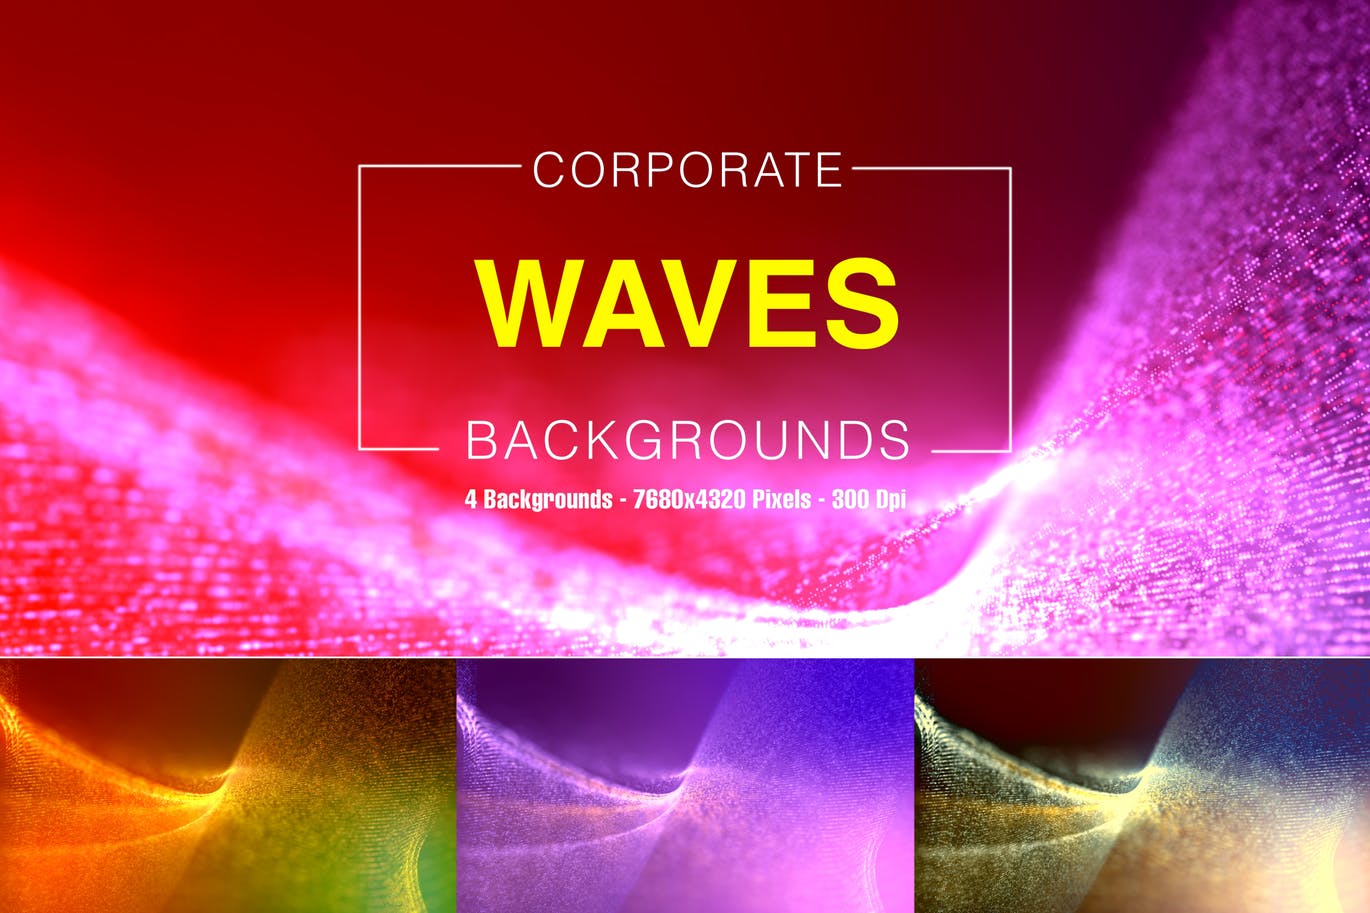 彩色波纹科技企业宣传背景图素材 Corporate Waves插图